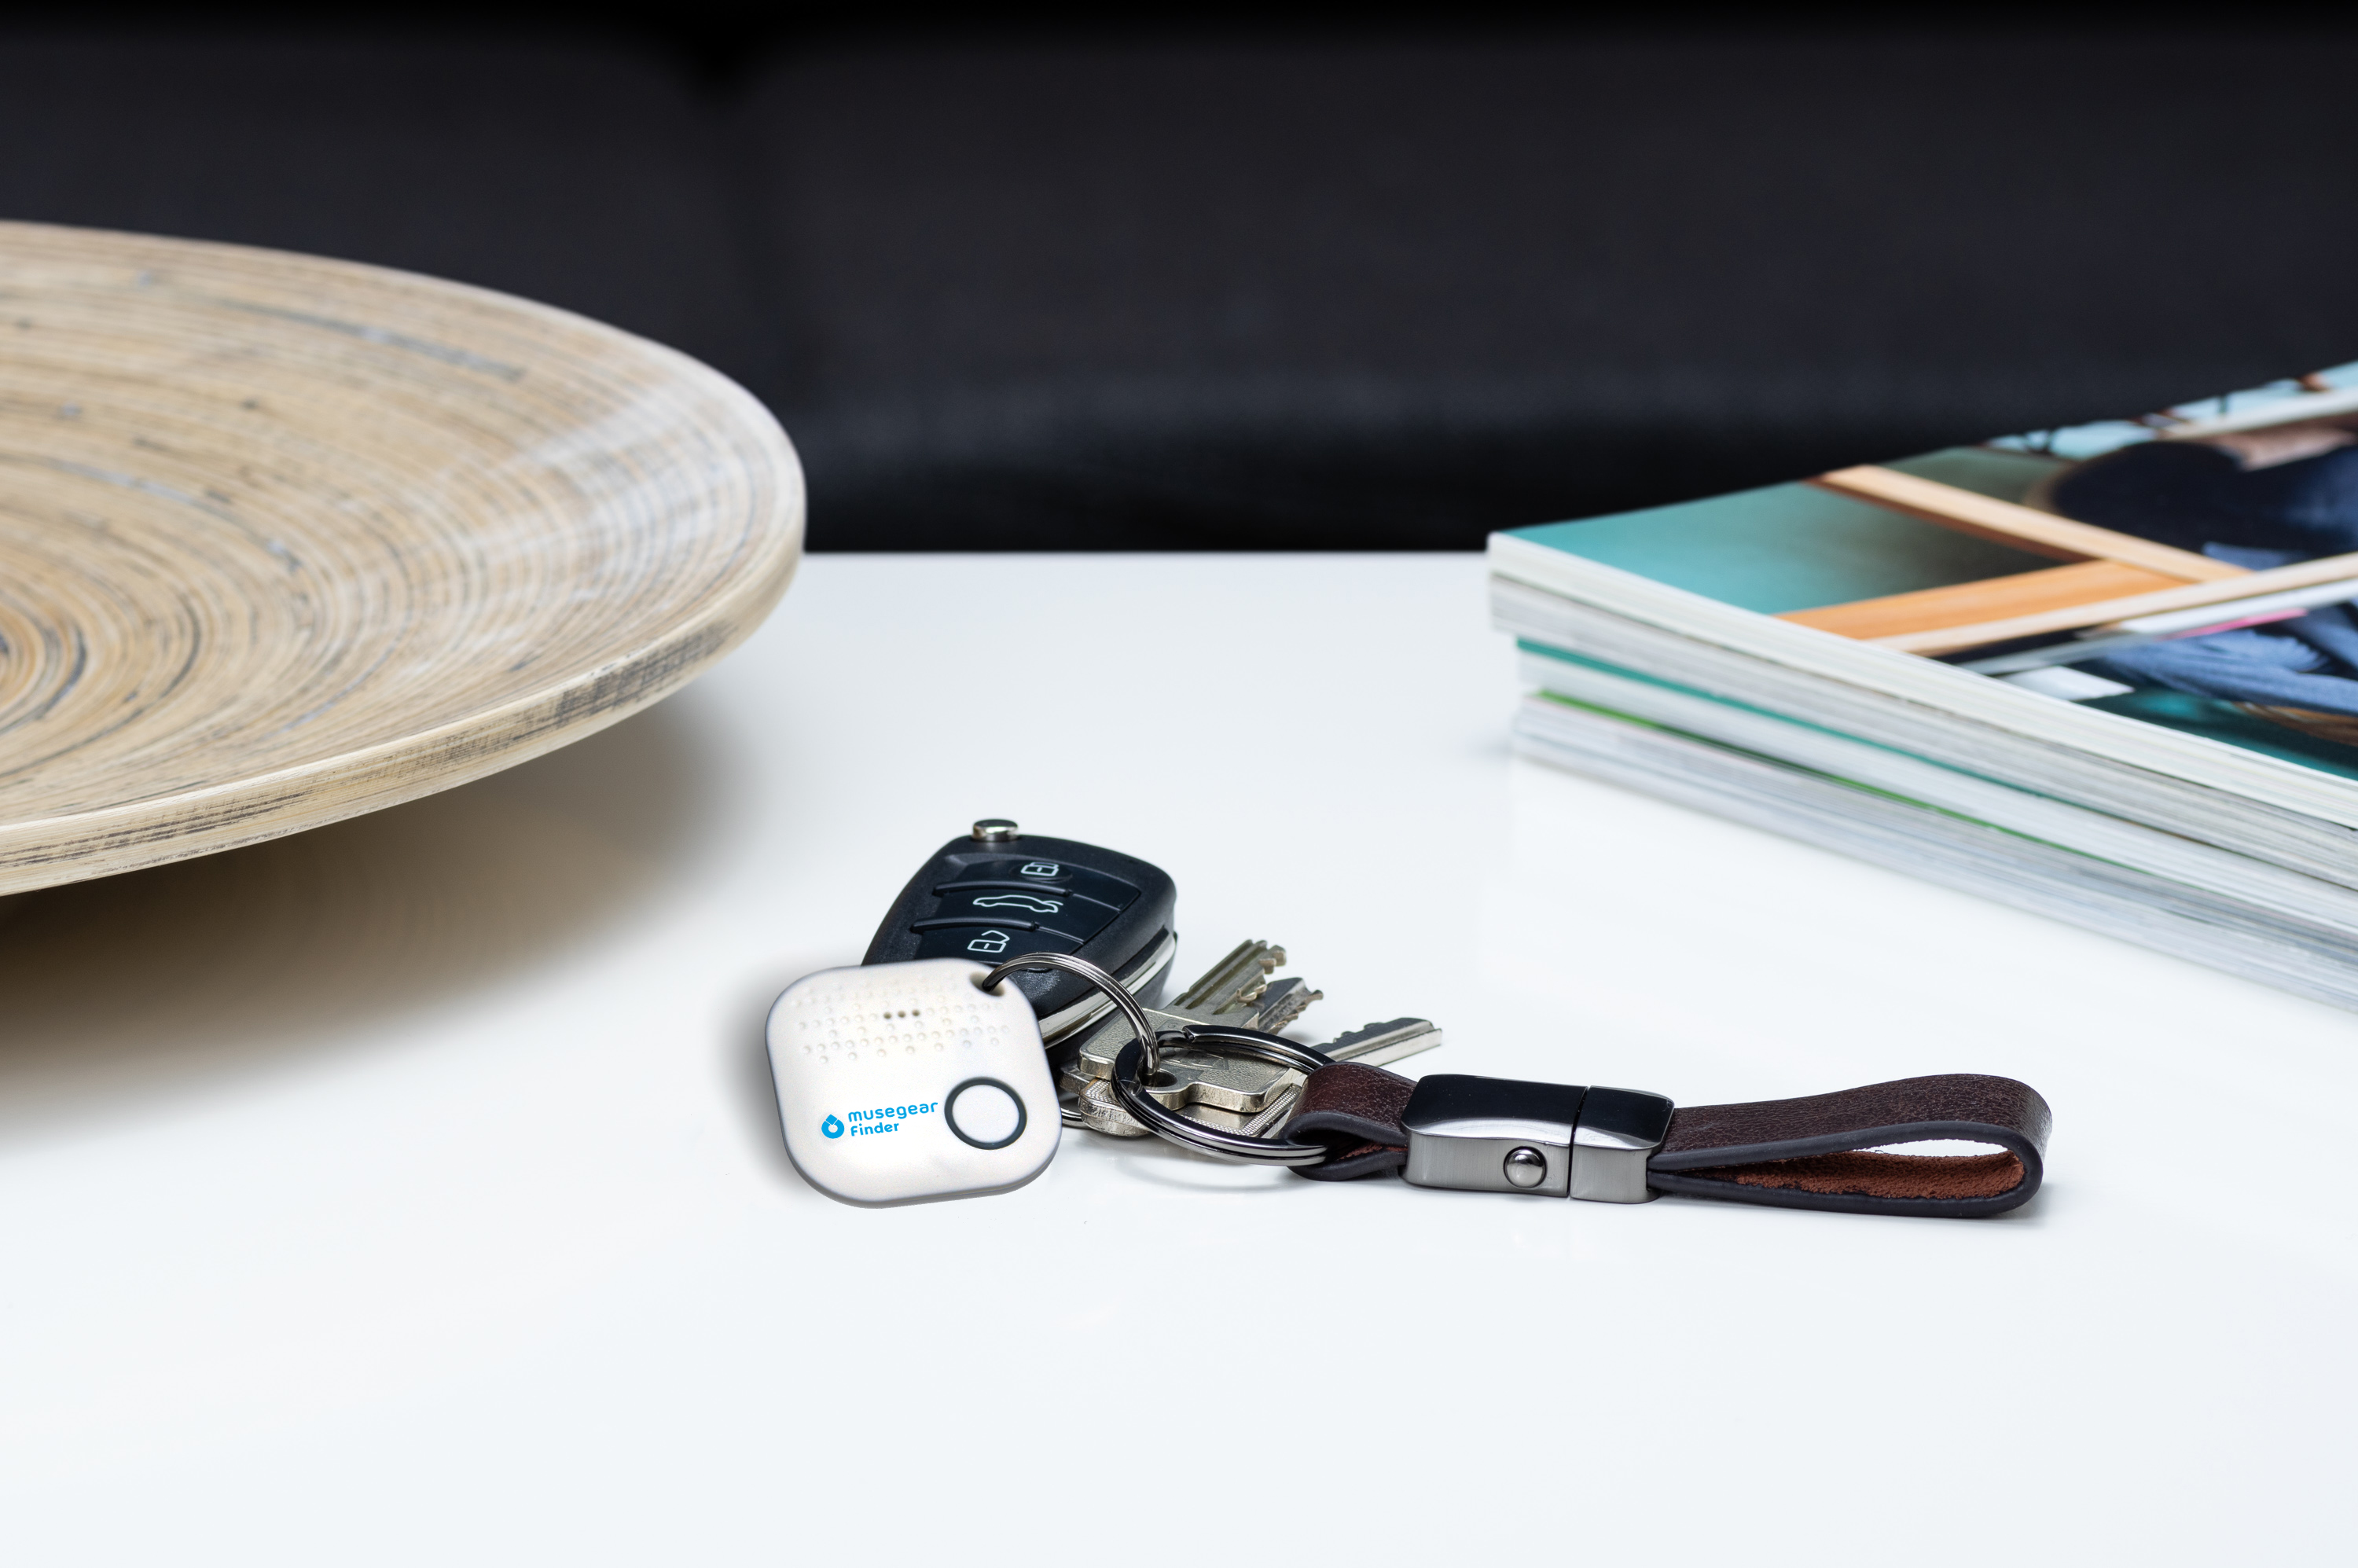 MUSEGEAR Schlüsselfinder mit Bluetooth Bluetooth App aus Schlüsselfinder Deutschland